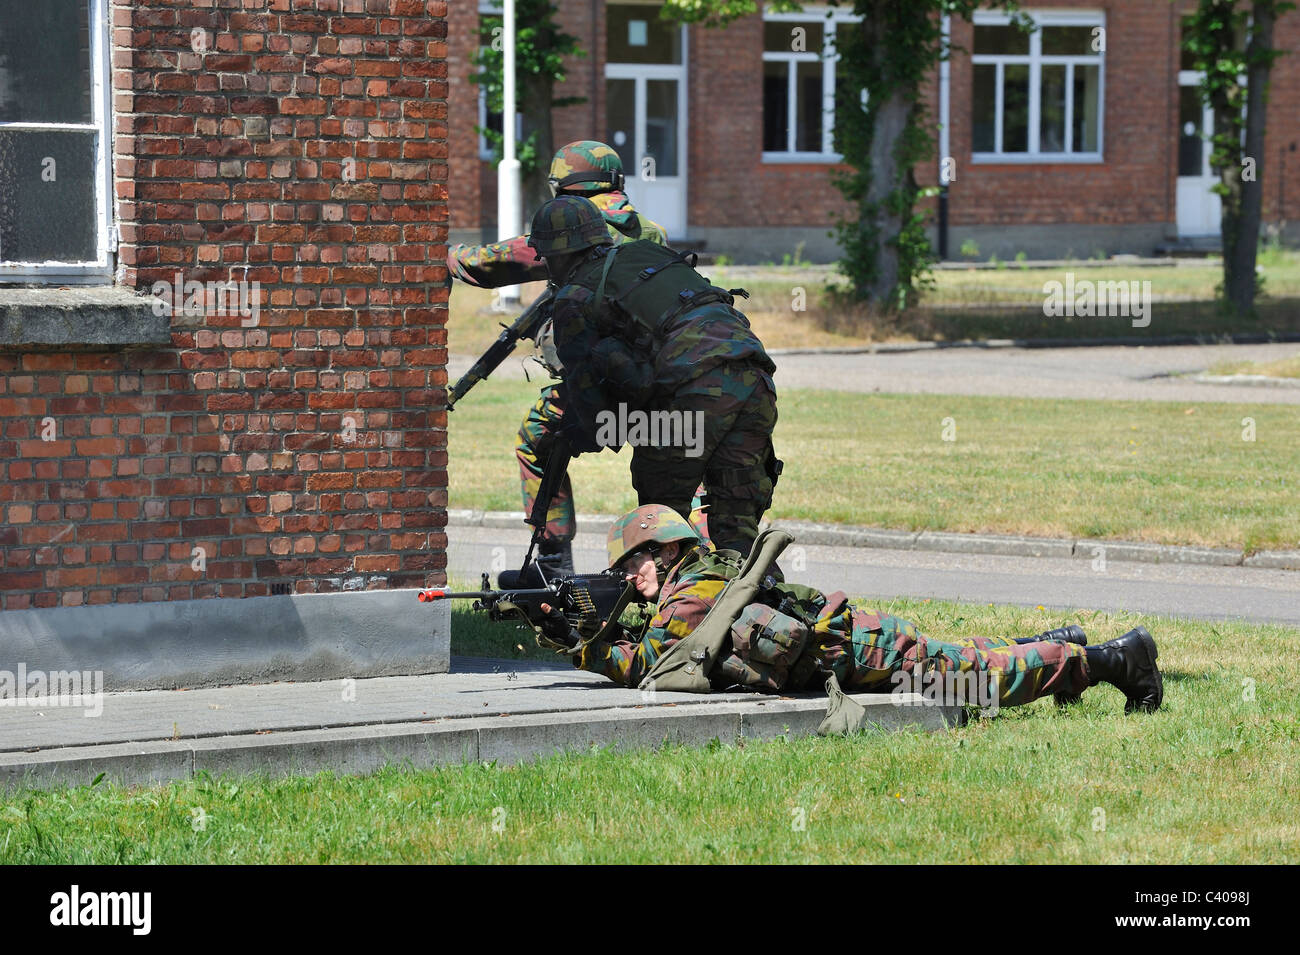 Soldato con FN Minimi mitragliatrice sparando in strada durante la dimostrazione a open day dell'esercito belga, Leopoldsburg, Belgio Foto Stock